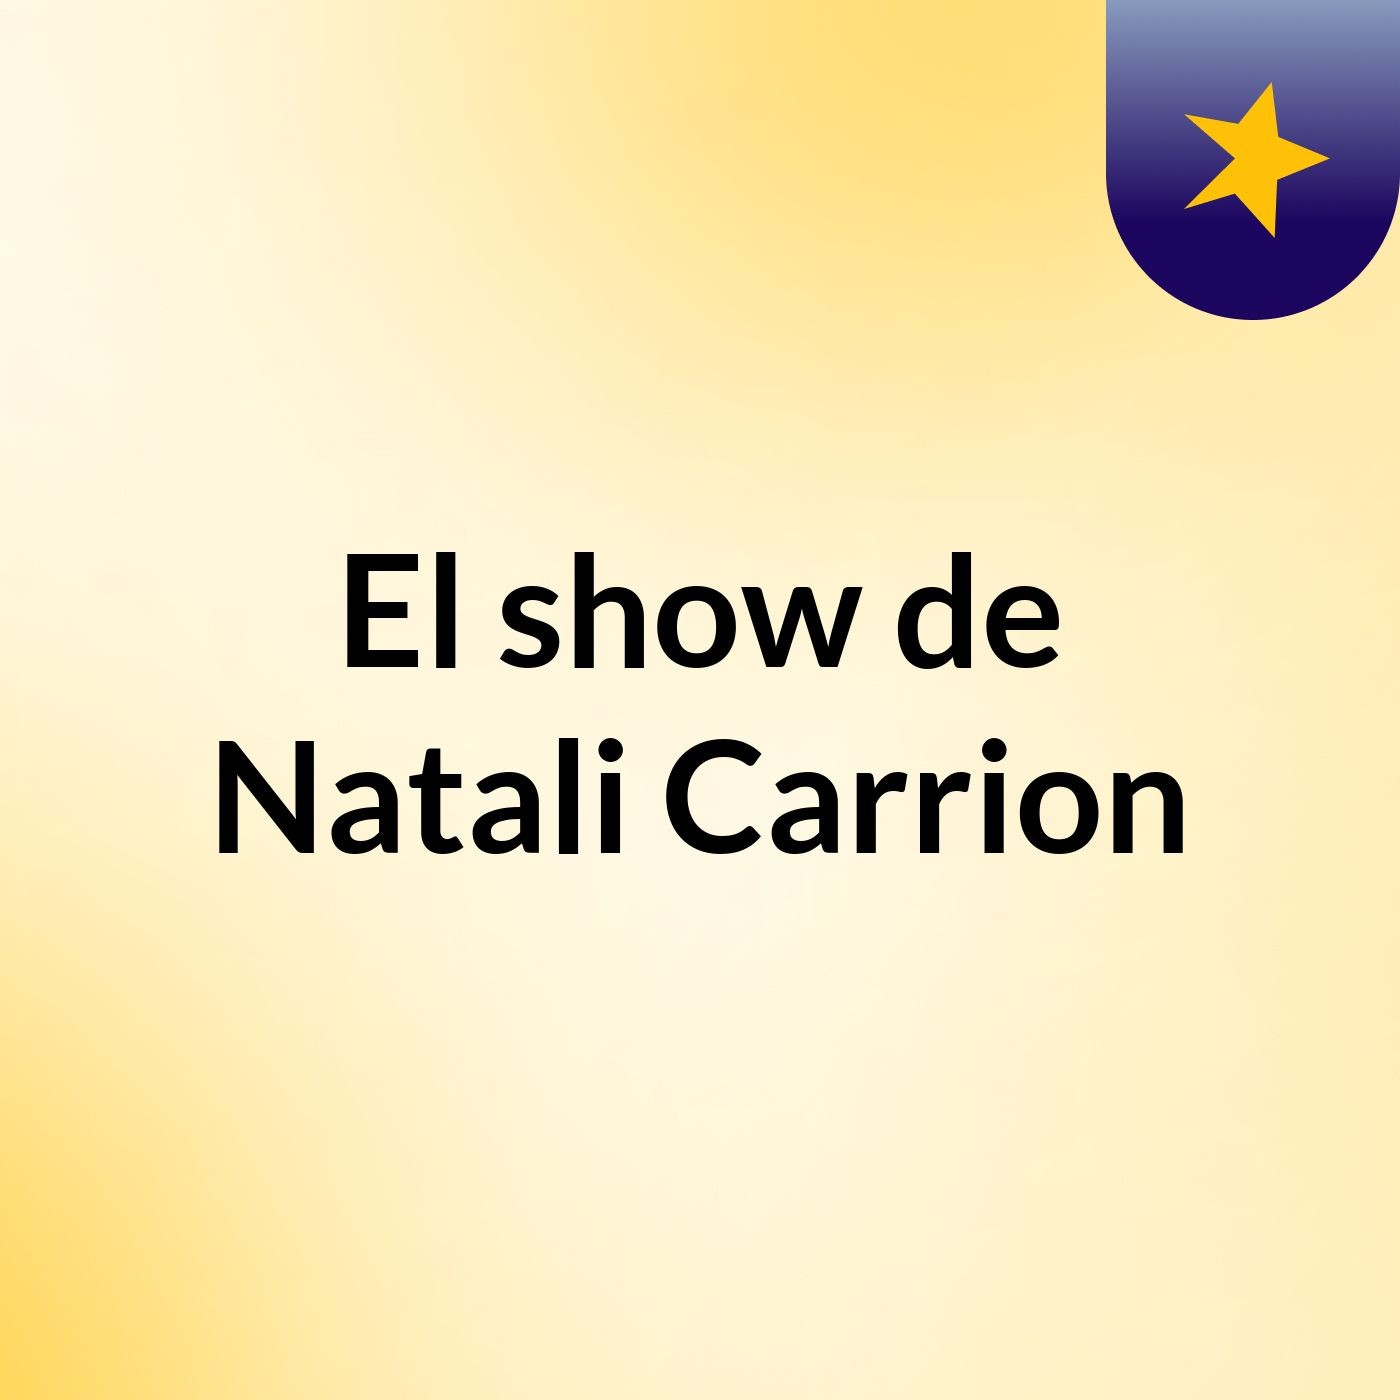 El show de Natali Carrion